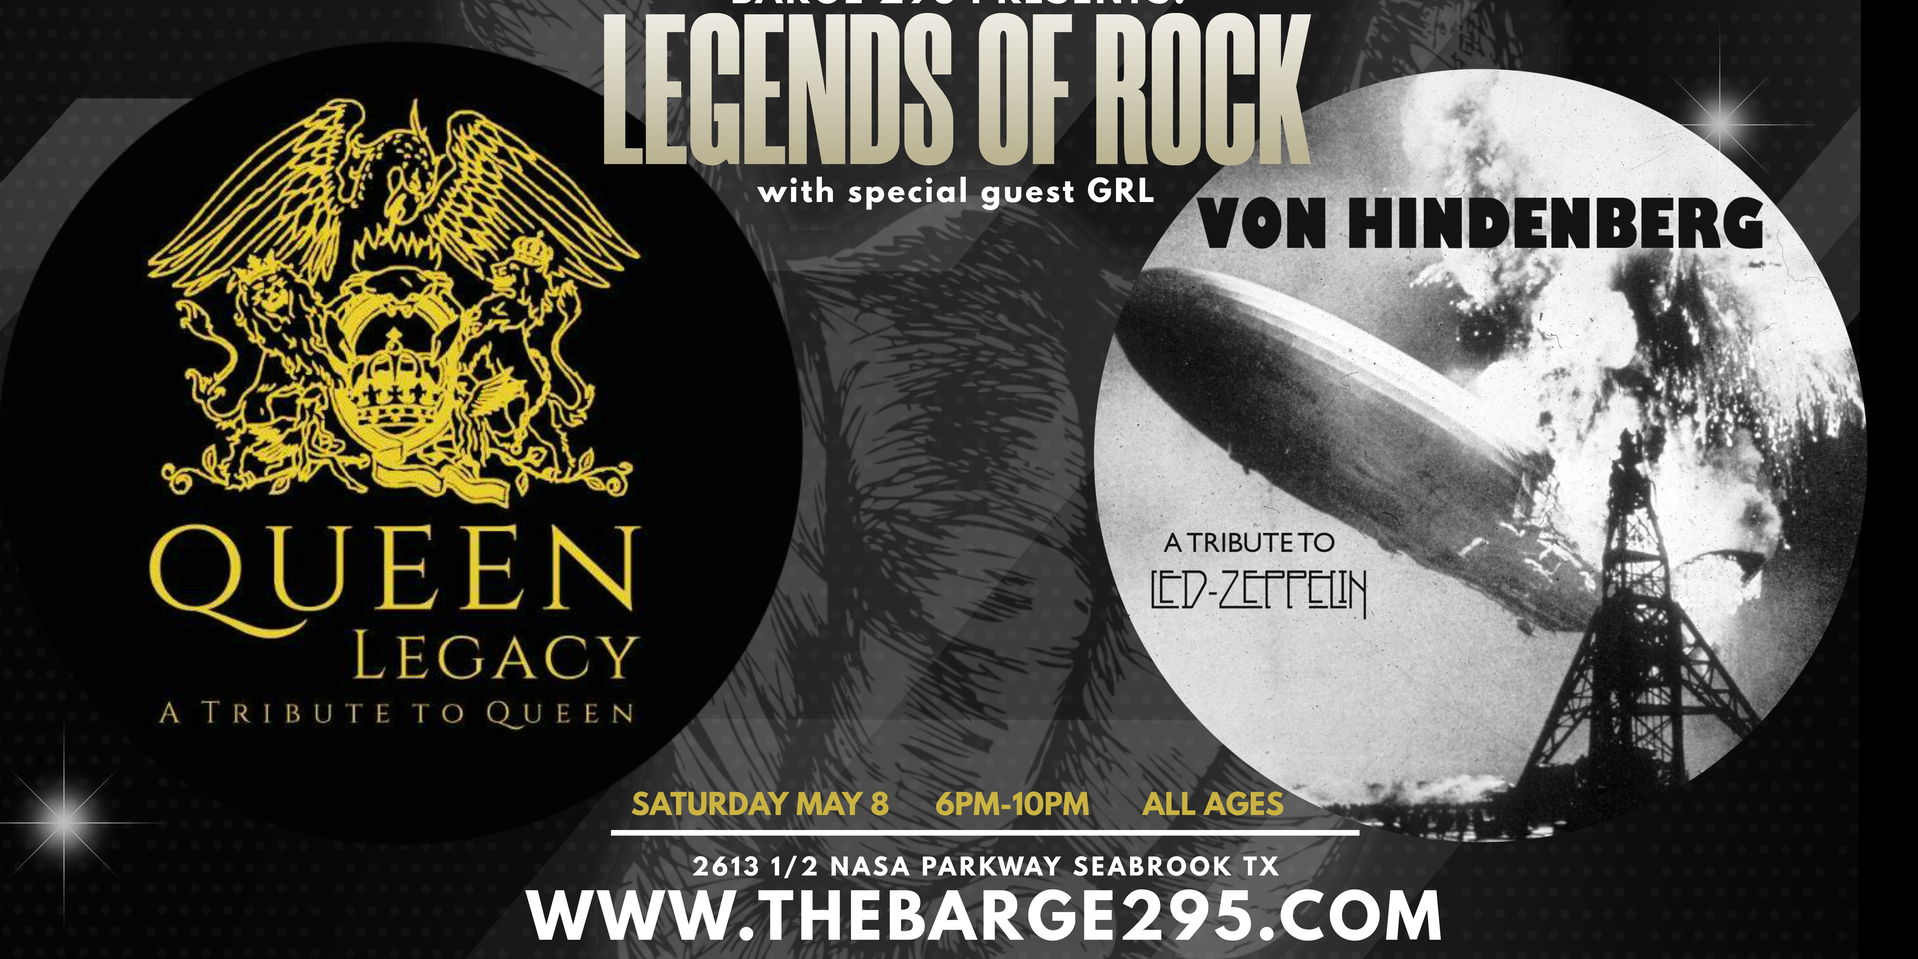 Legends of Rock at Barge 295 promotional image